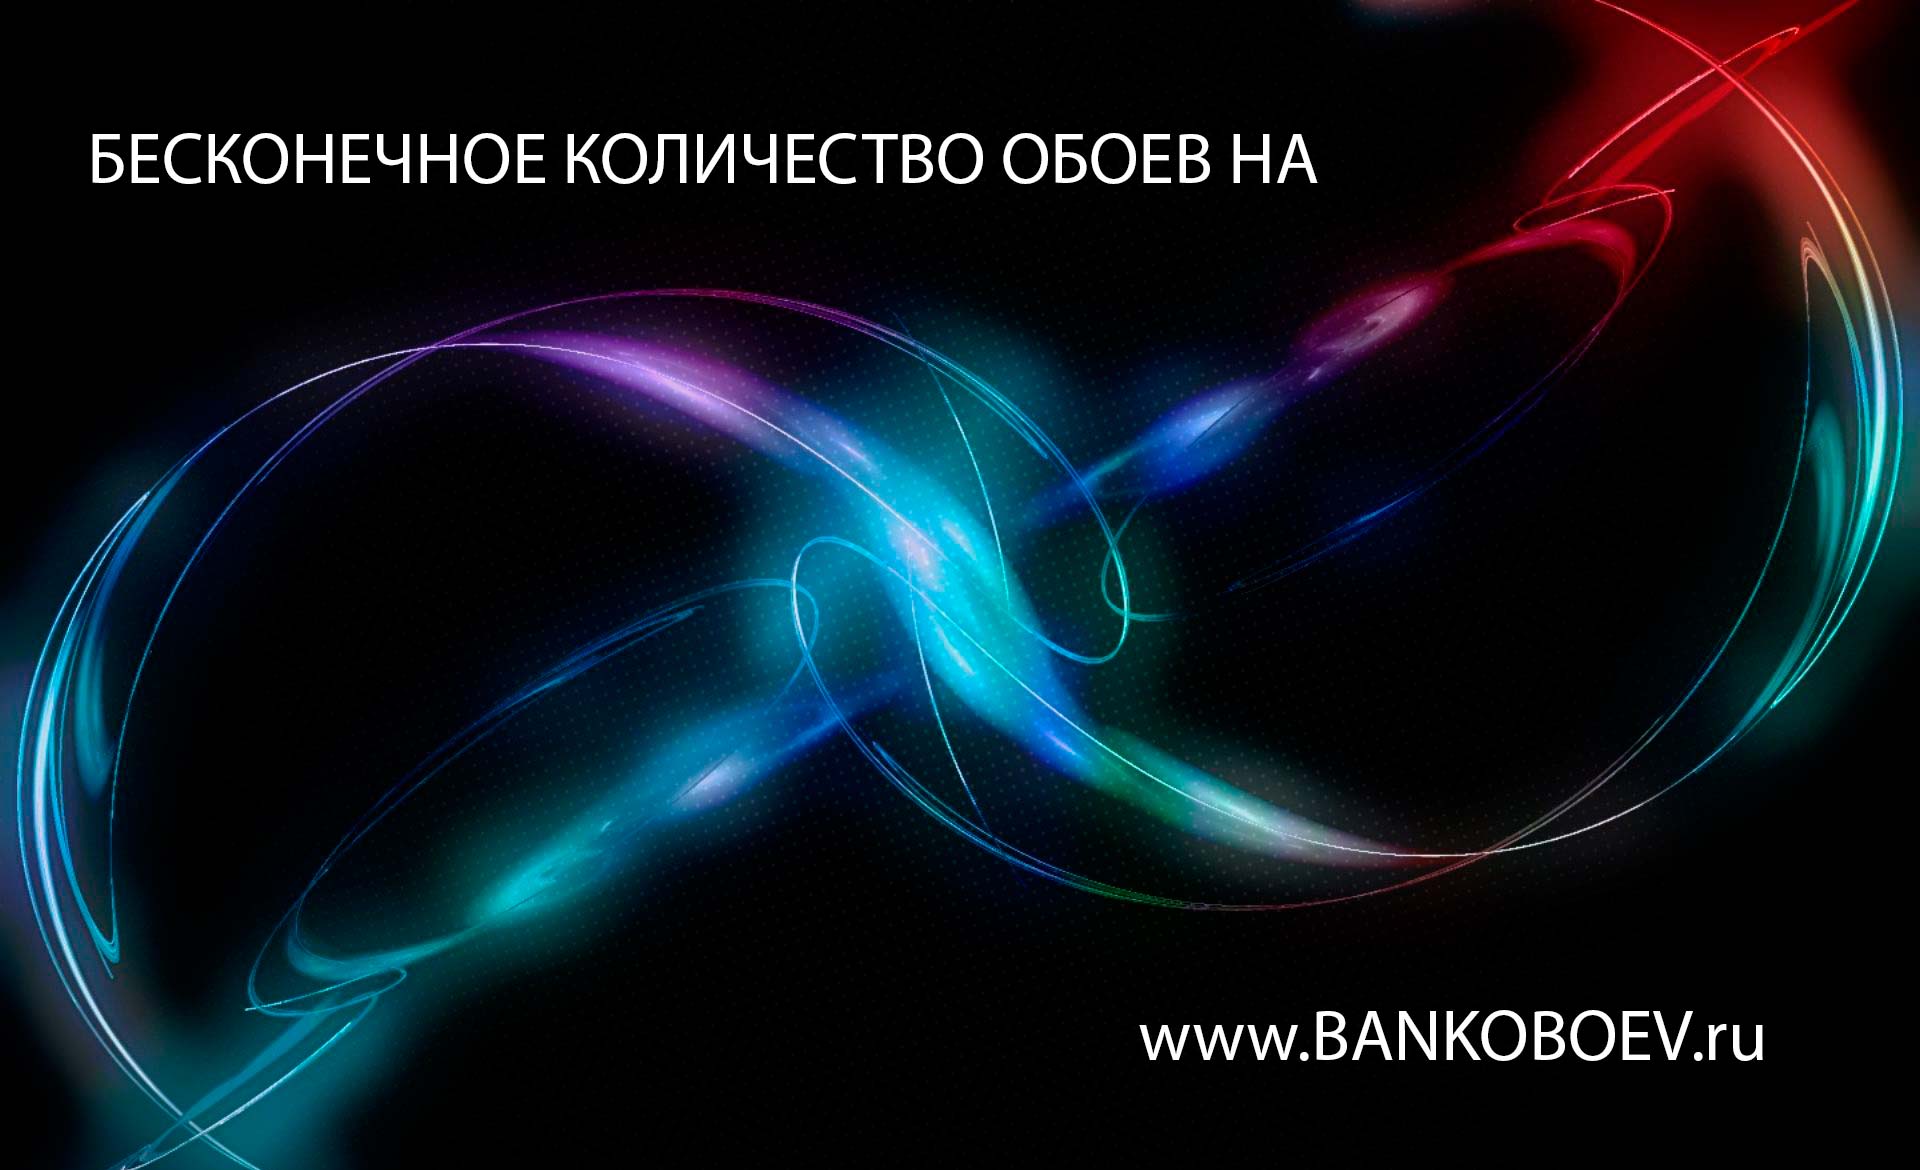 Bankoboev Ru Image Mte2ode2 Jpg